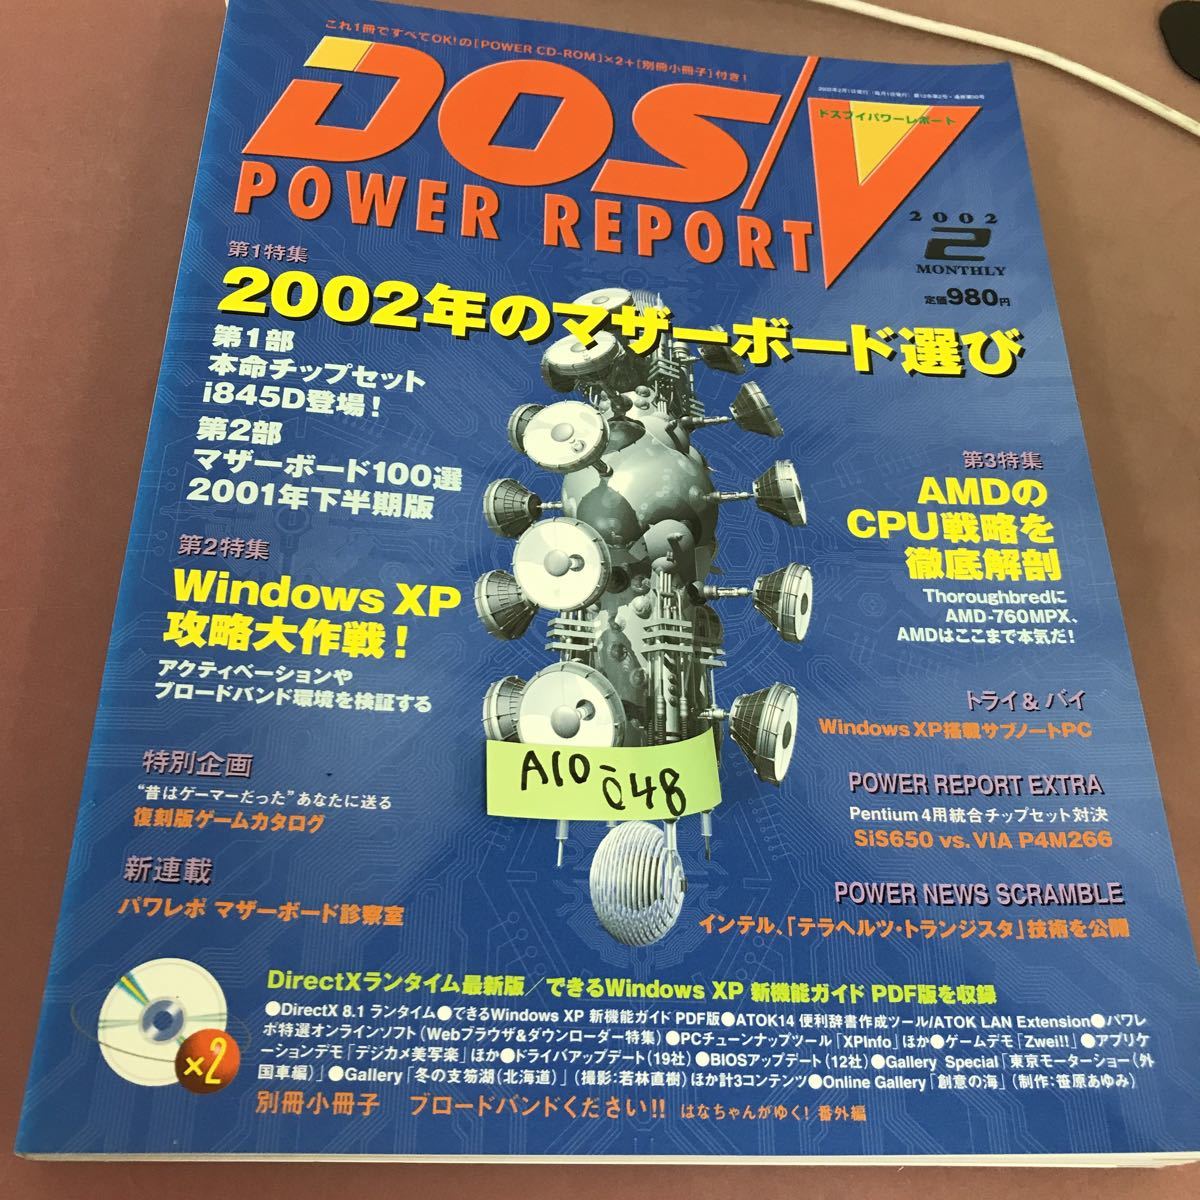 A10-048 DOS/V POWER REPORT 2002.2 специальный выпуск 2002 год. материнская плата выбор др. CD-ROM имеется отдельный выпуск маленький брошюра нет 